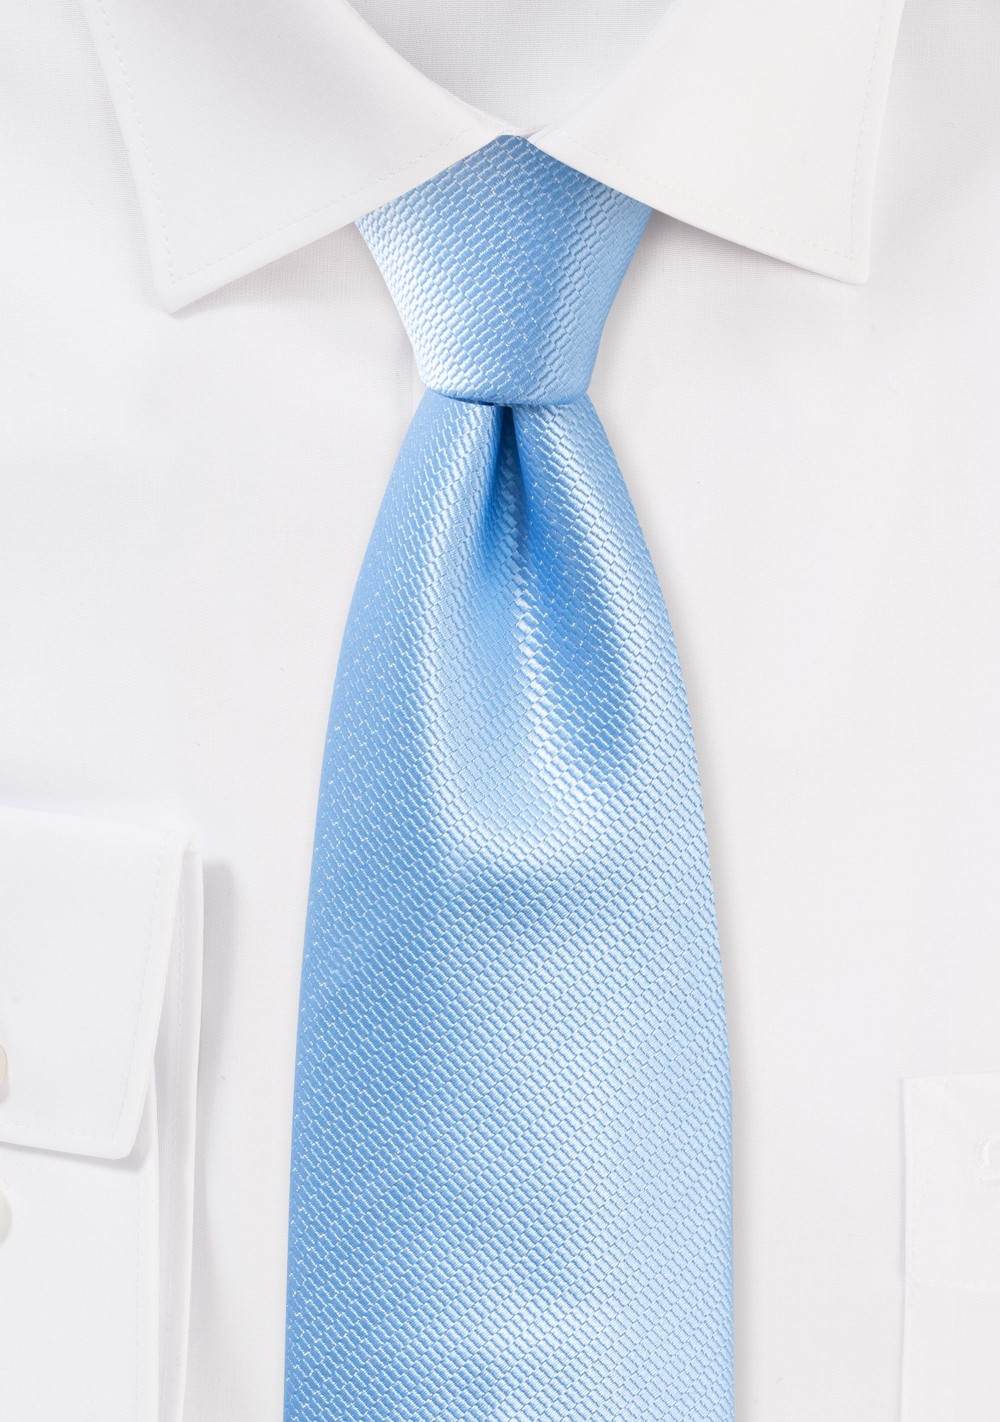 Formal Summer Tie in Capri Blue